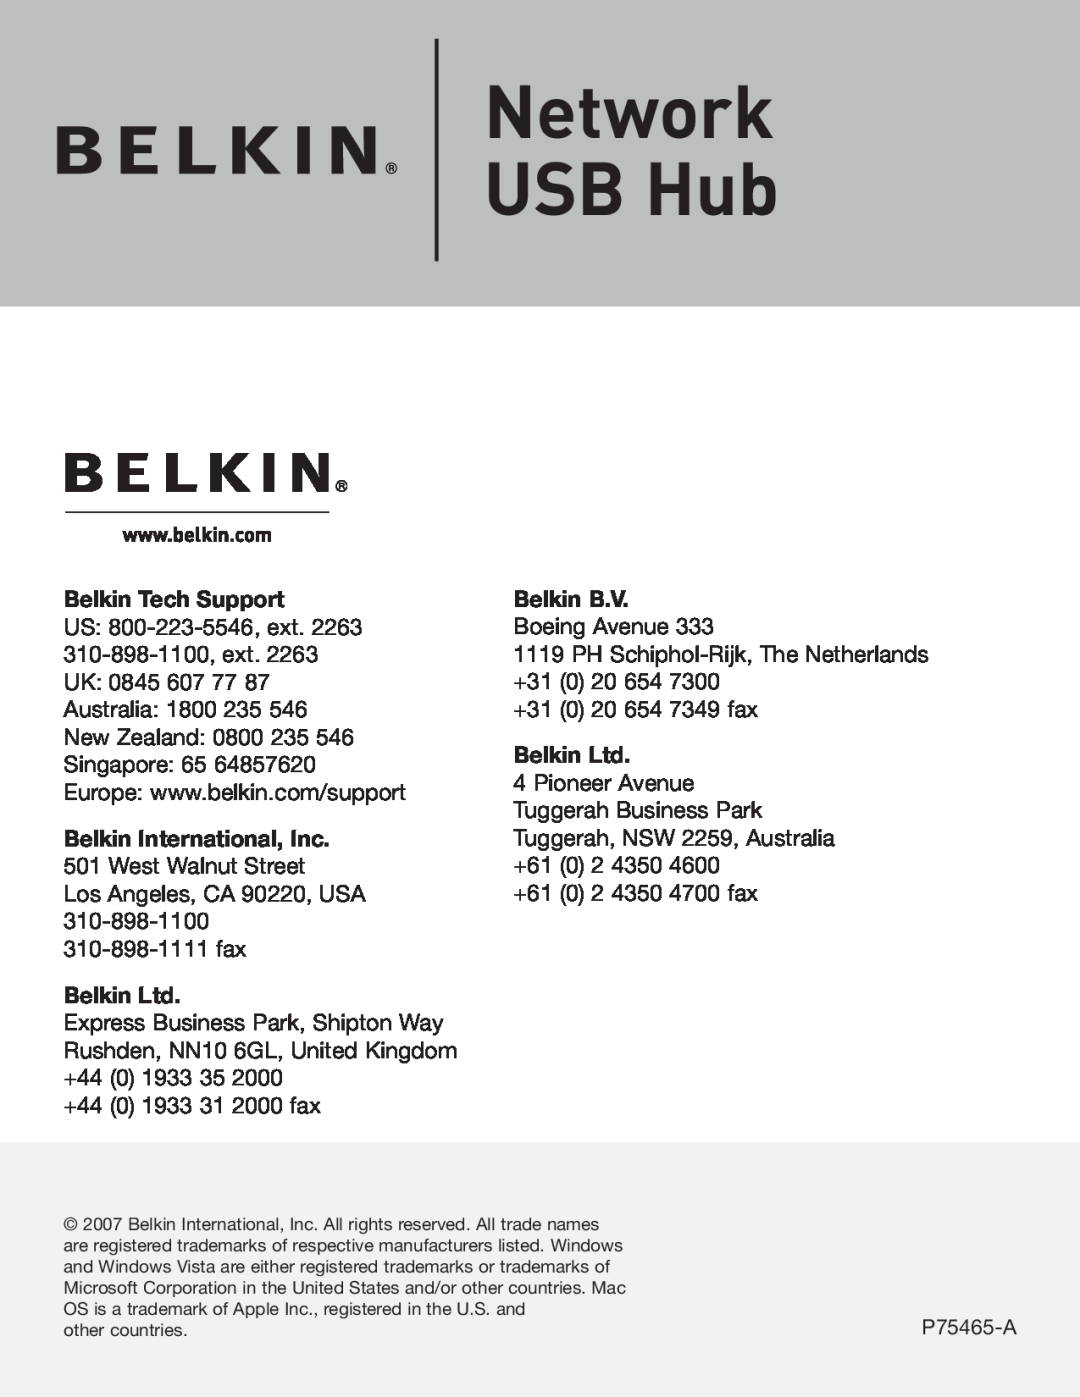 Belkin P75465-A manual Network USB Hub, Belkin Tech Support, Belkin B.V 